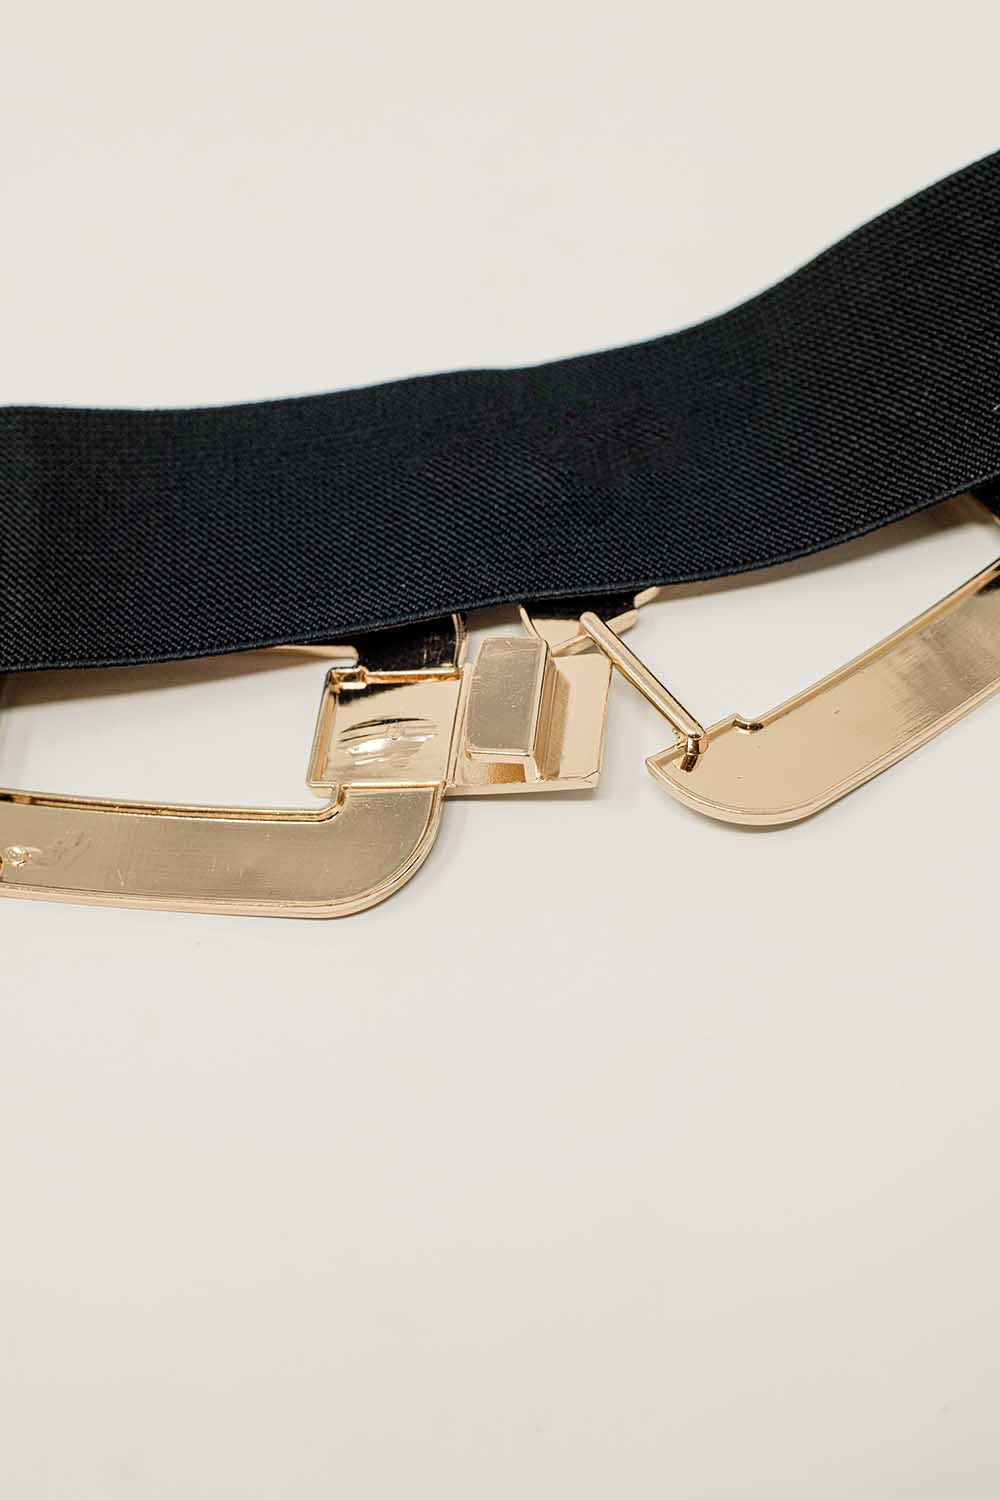 Cintura elastica nera con doppia fibbia ovale con incastonature di strass